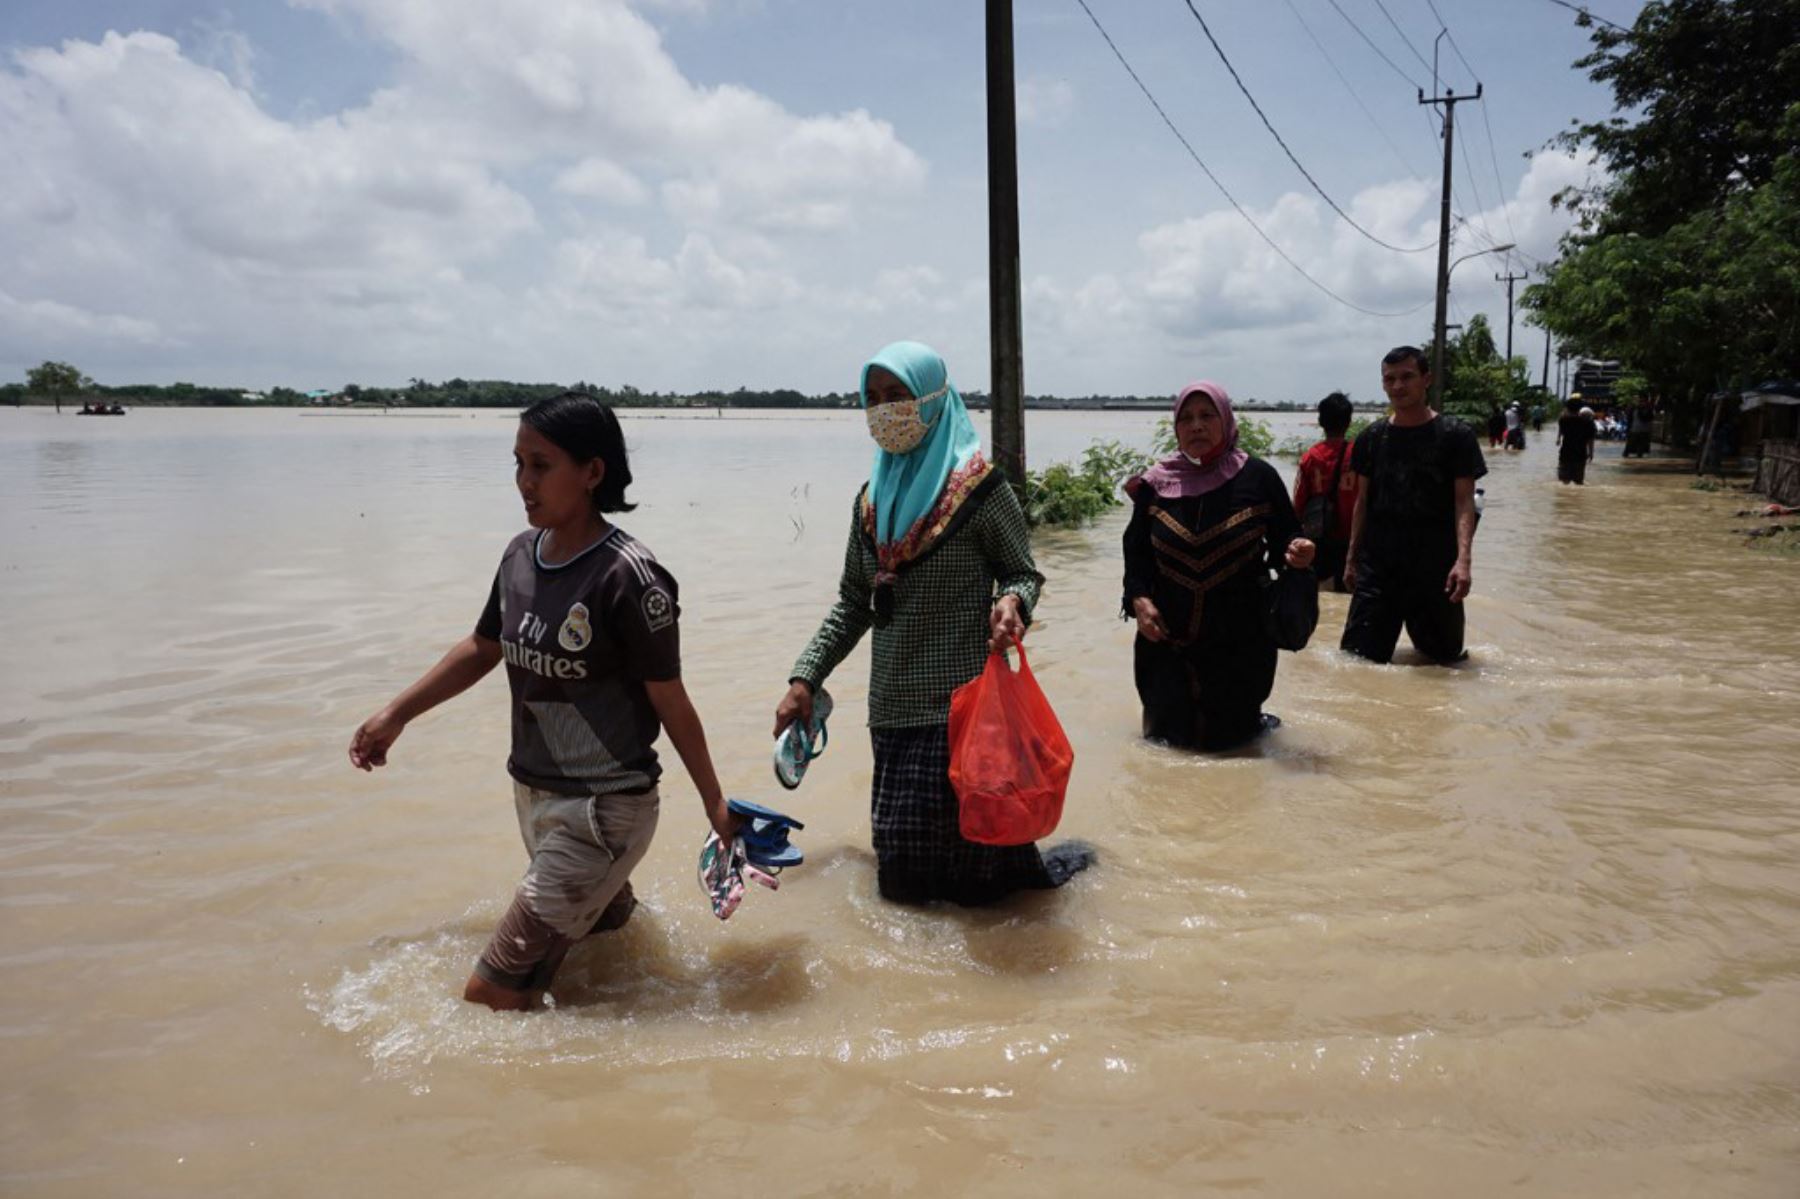 Los residentes avanzan a lo largo de una calle inundada en Bekasi, Java Occidental, después que varias zonas de la capital de Indonesia se inundaron por las fuertes lluvias estacionales.

Foto: AFP